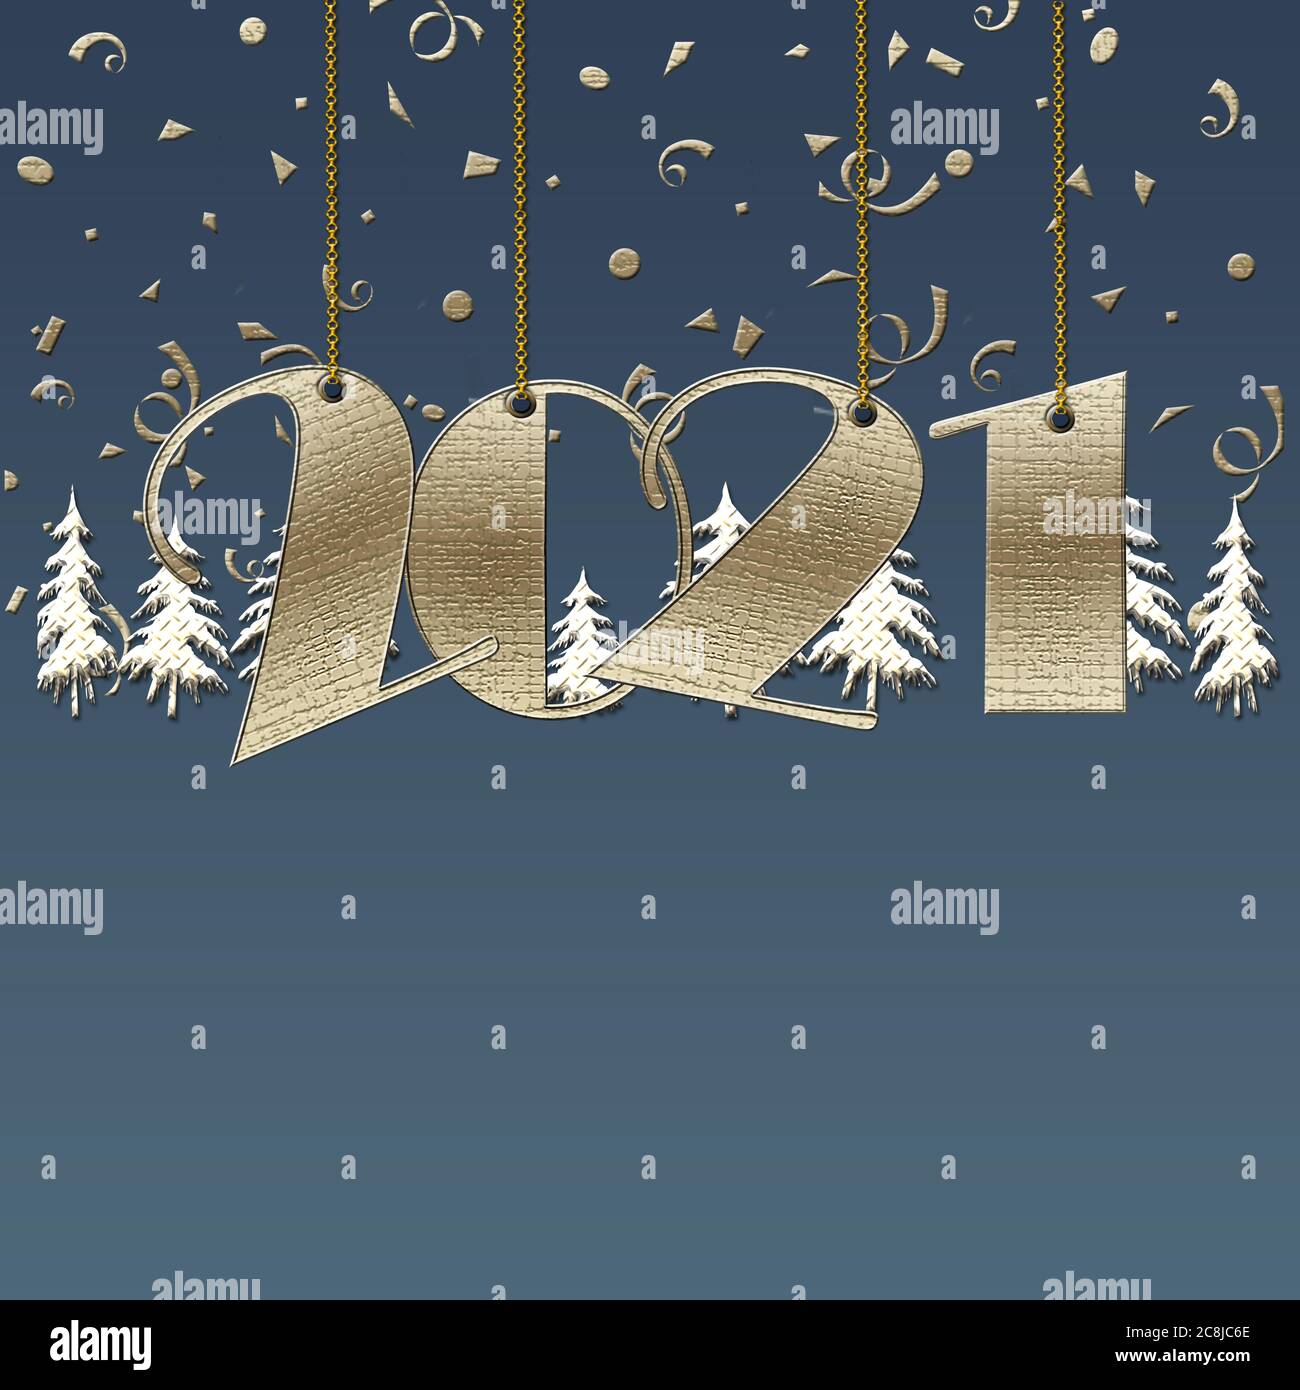 Luxueux Happy New 2021 ans design avec 2021 chiffres suspendus, arbres de noël sur fond bleu. Graphique des vacances d'hiver, emplacement pour le texte, carte de visite Banque D'Images